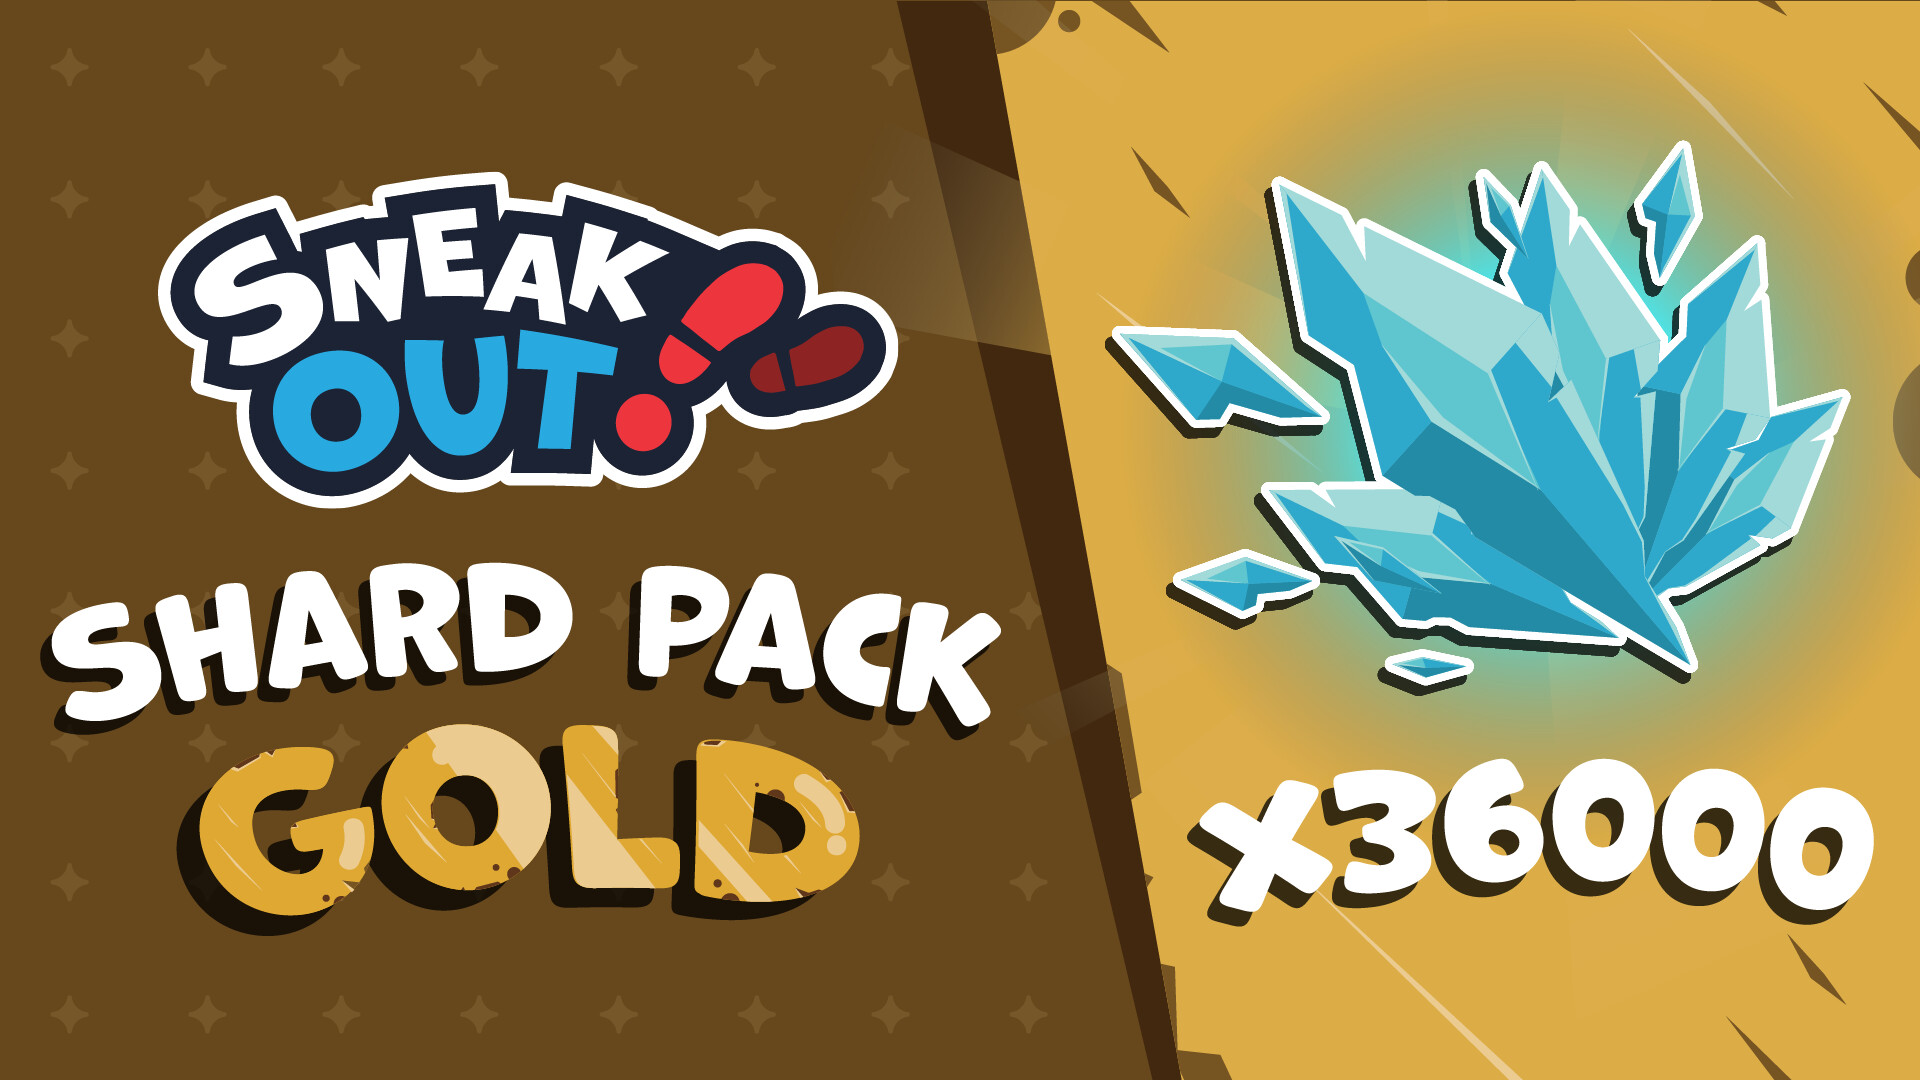 Sneak Out - Shard Pack Gold Featured Screenshot #1